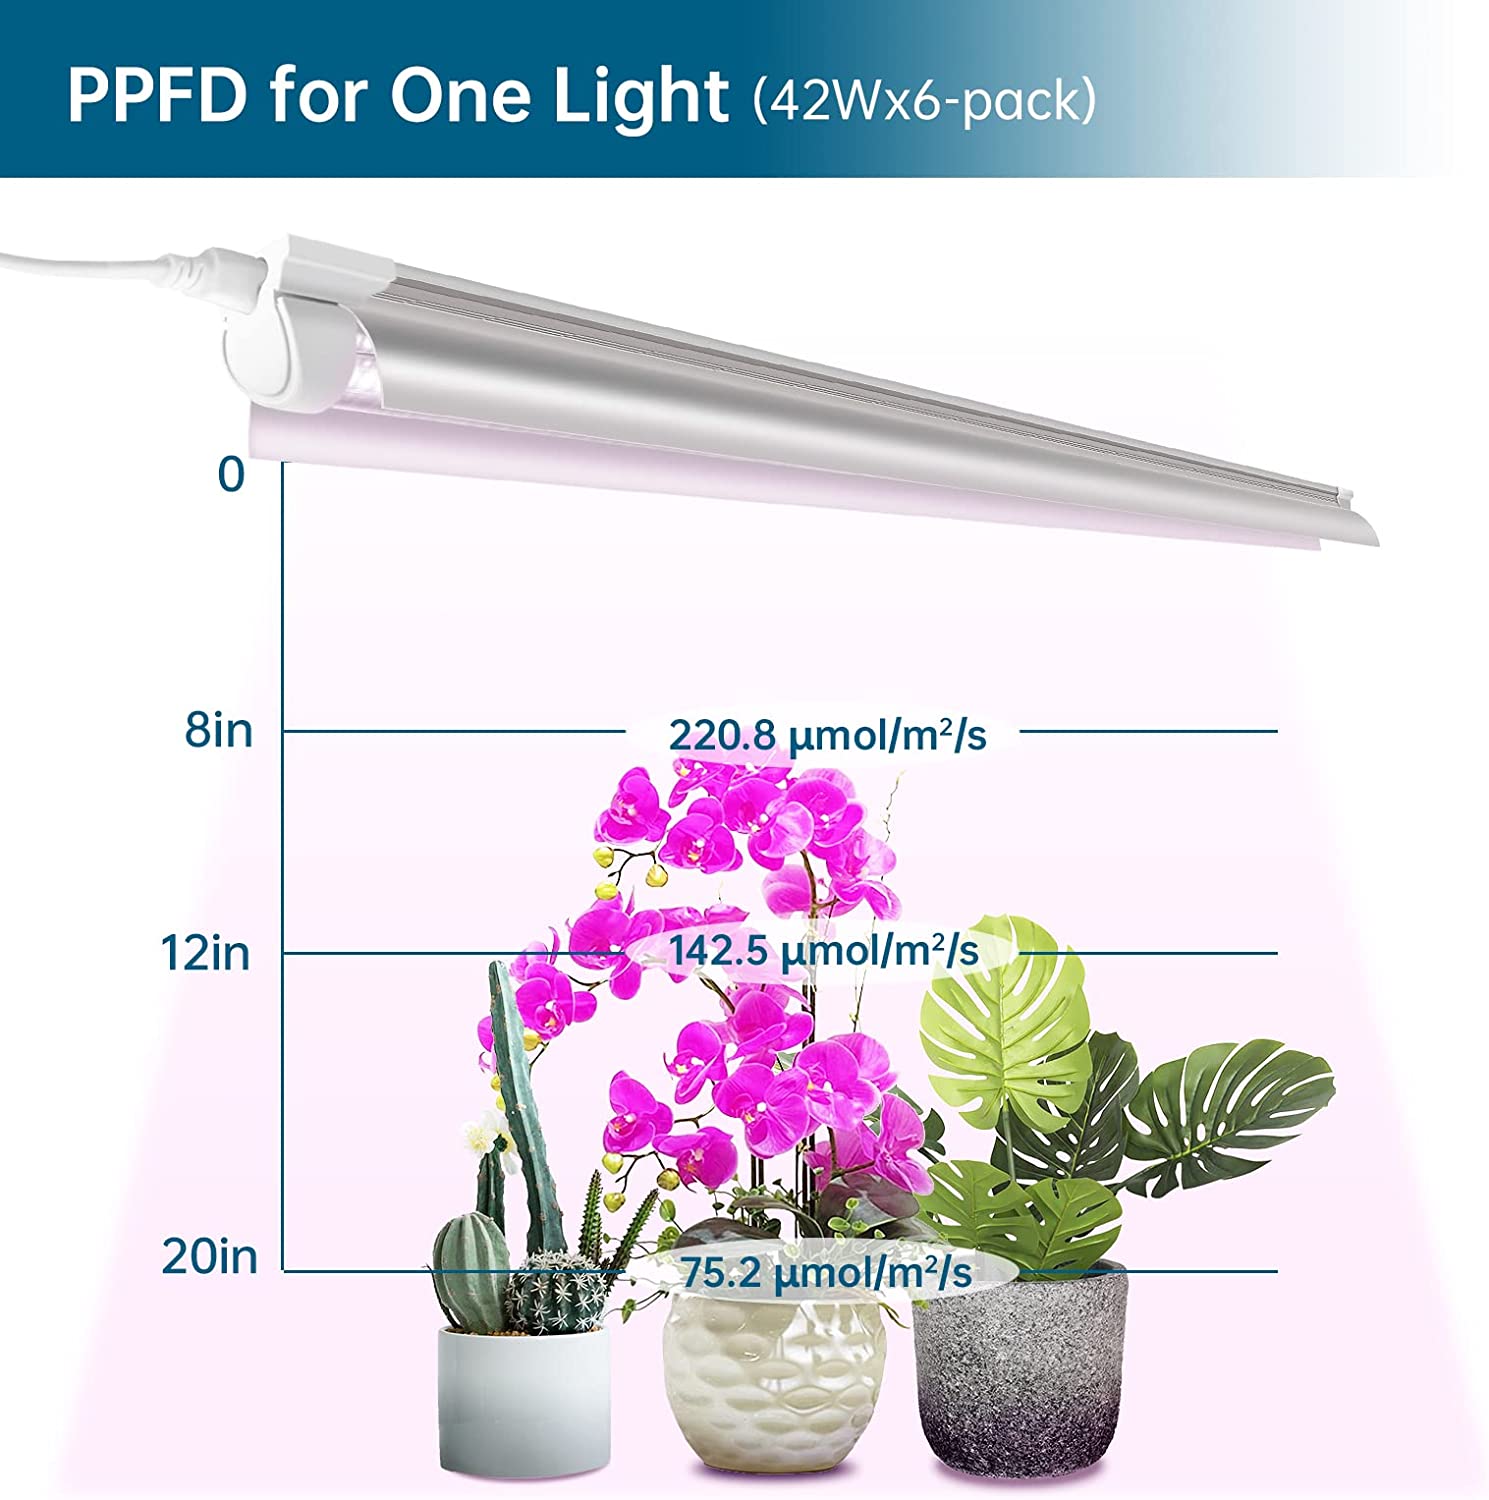 T8 LED Grow Light,4FT,42W,Pinkish White,Full Spectrum,Linkable,Reflector Design,6 Packs,QL42(FB)